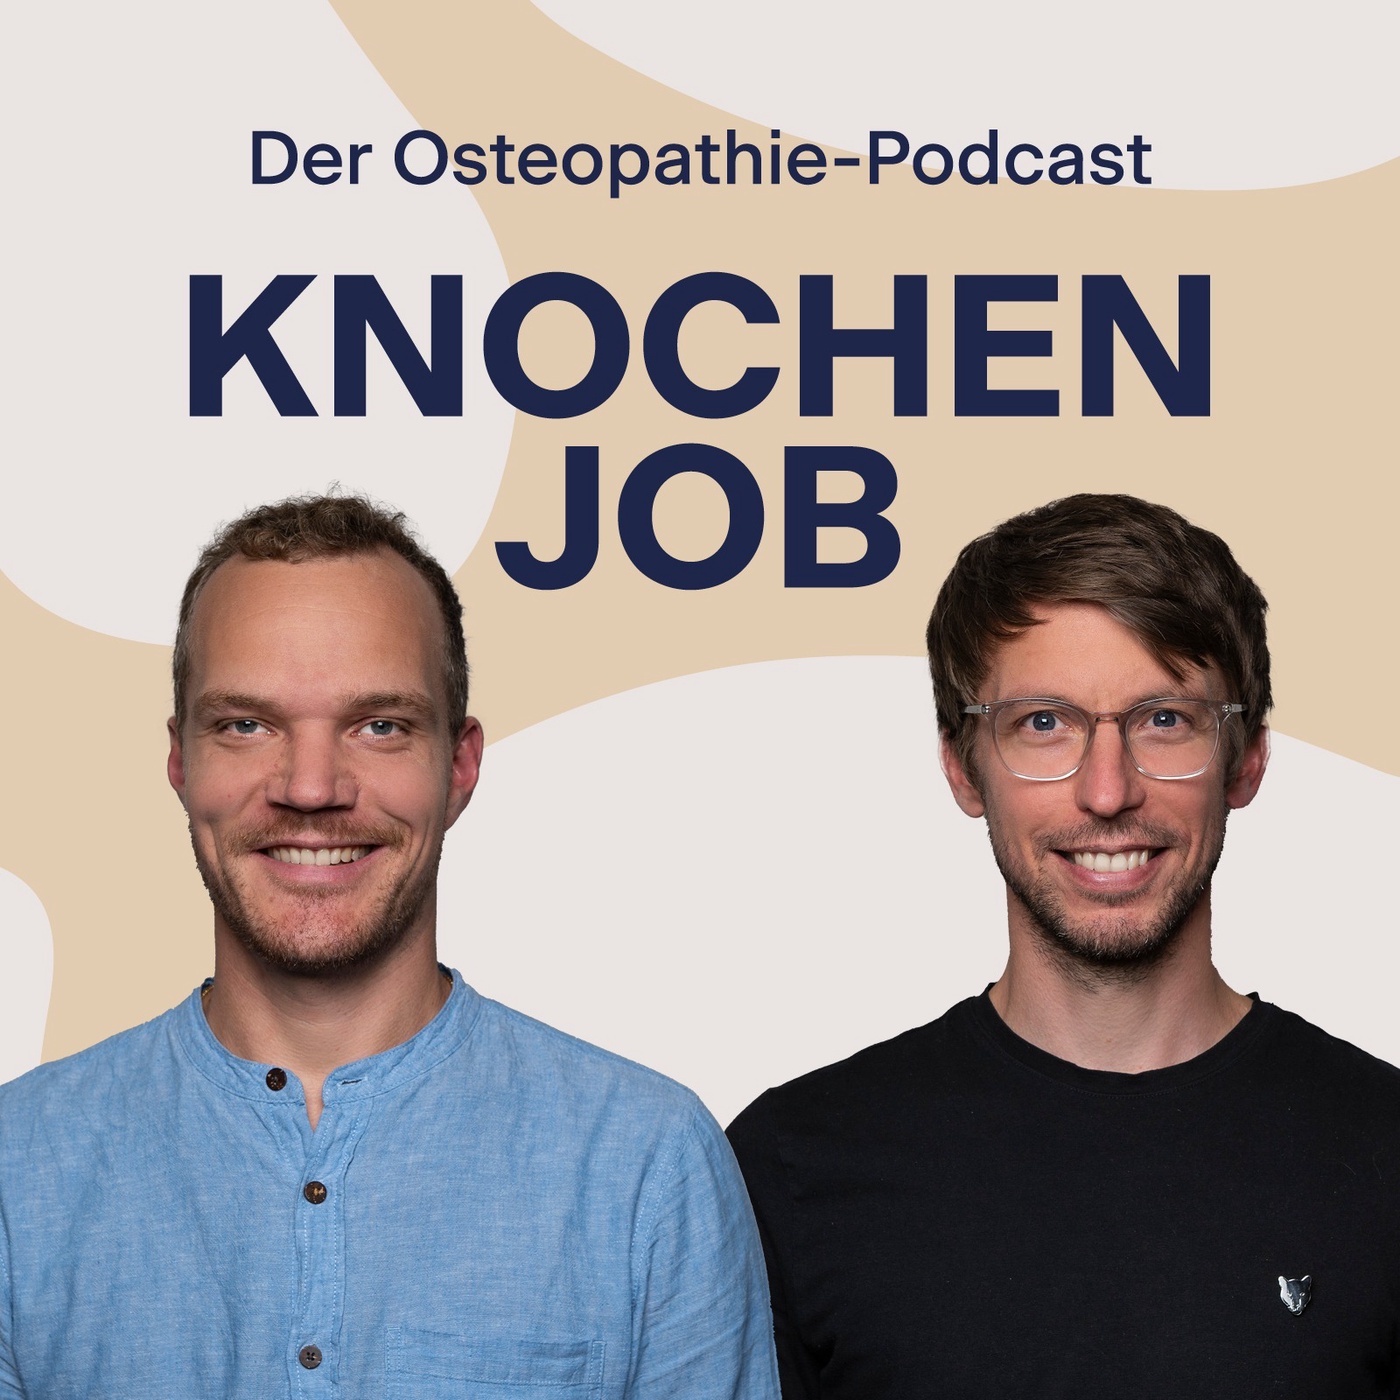 Interview-Spezial mit Robert Schleip: Schmerzen und Muskelhartspann sind nicht kausal